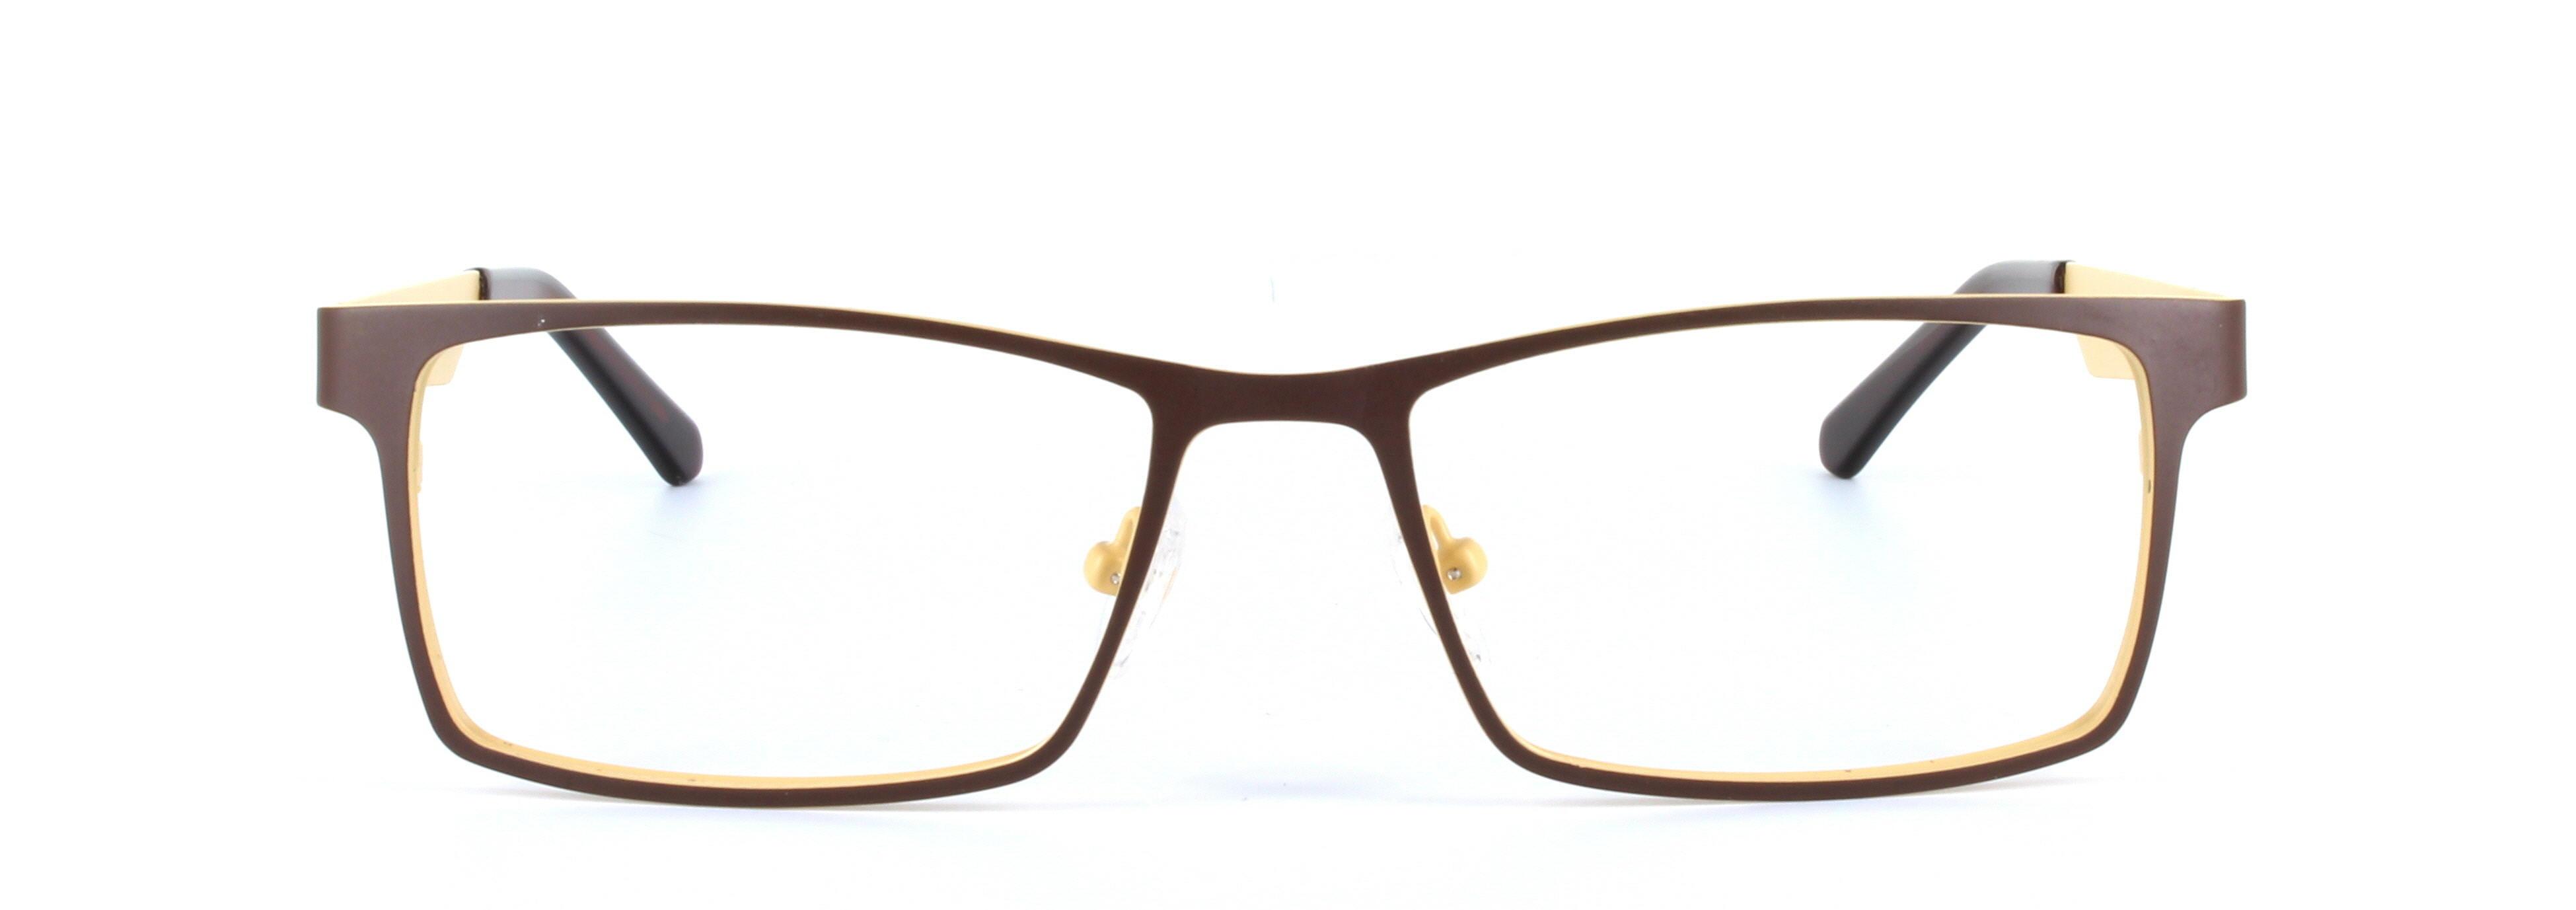 Banyan Brown Full Rim Rectangular Metal Glasses - Image View 4